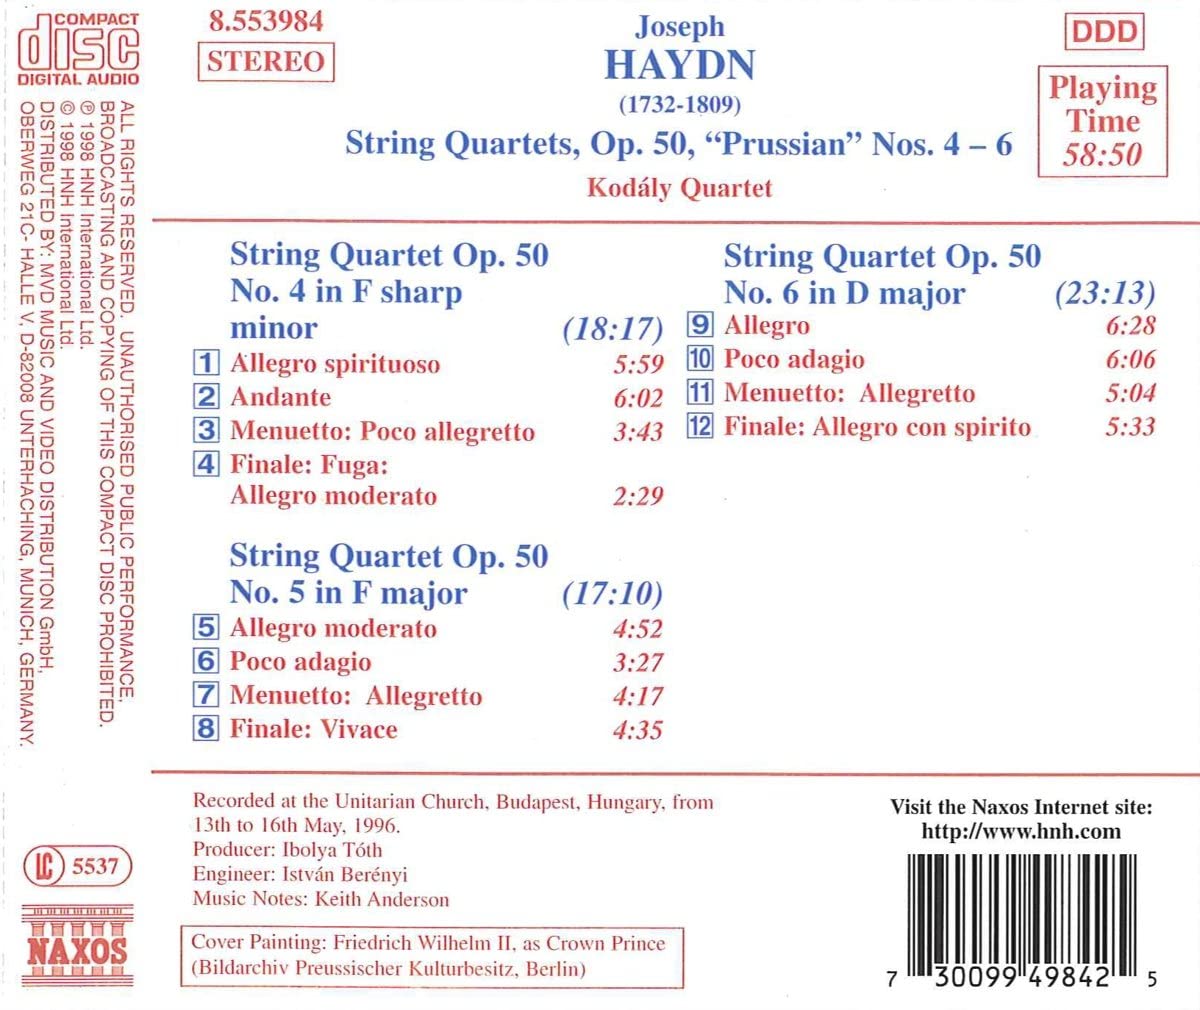 HAYDN: String Quartets "Prussian", Op. 50, Nos. 4-6 - slide-1